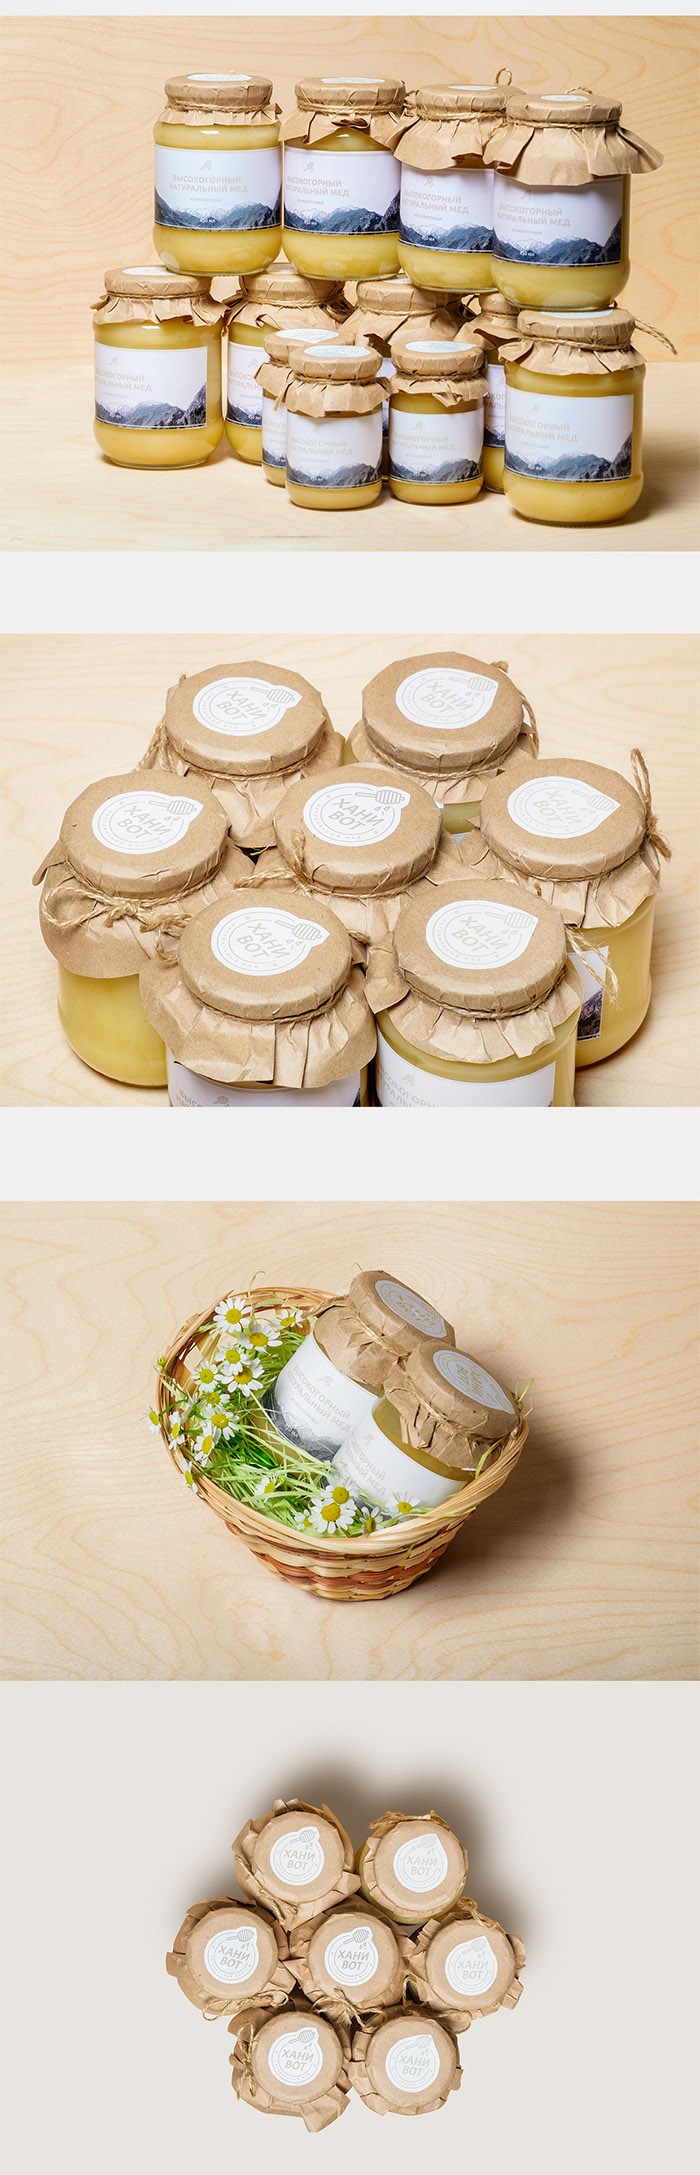 Honey Vot蜂蜜包装设计